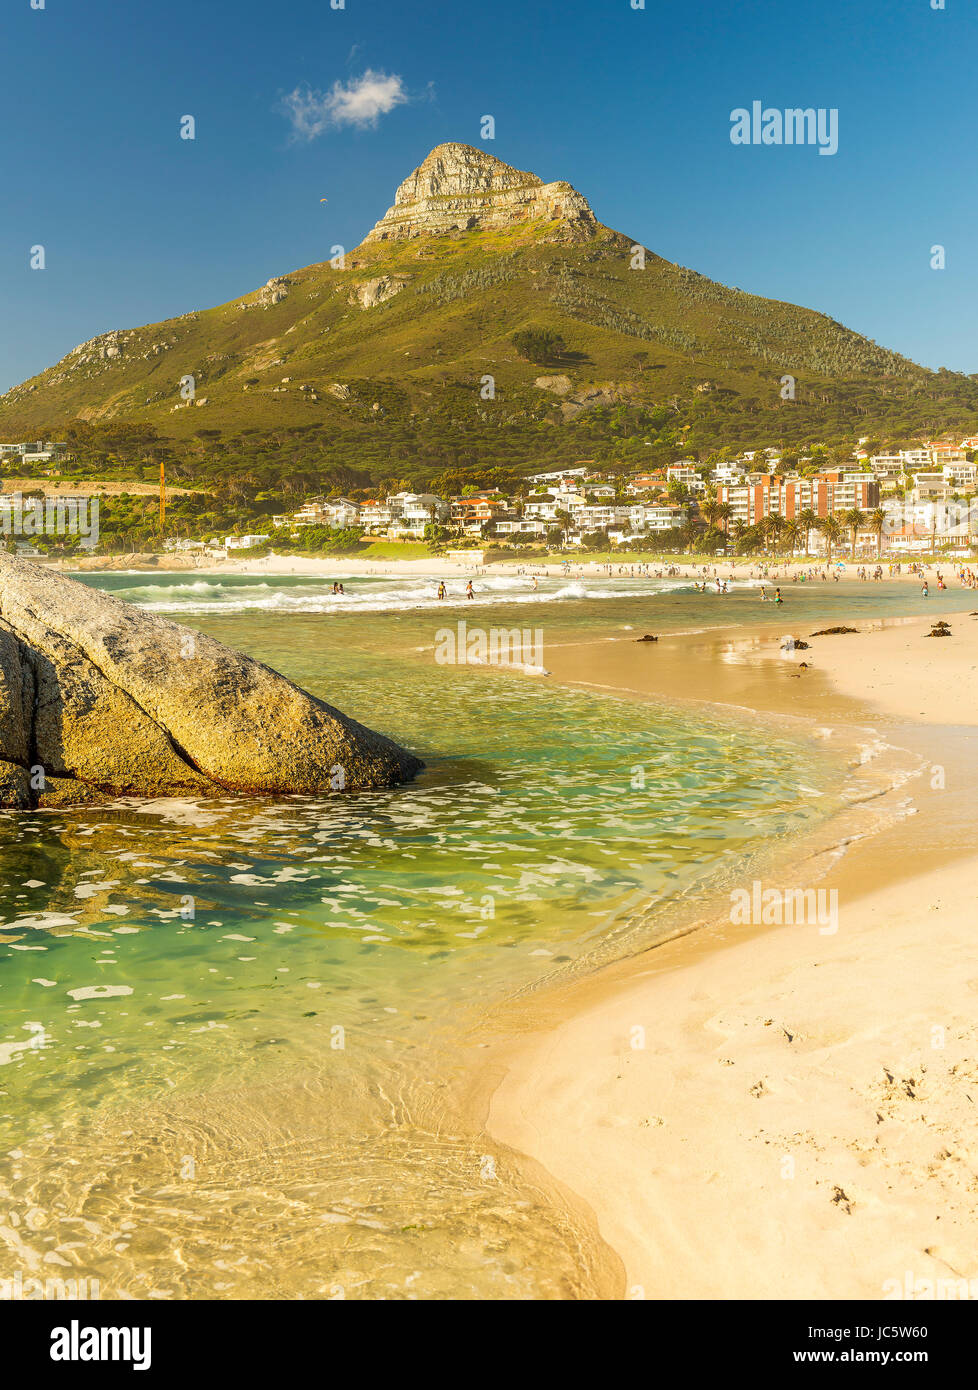 CAMPS BAY, Südafrika - 5. Oktober 2015: nicht identifizierte Personen auf Camps Bay beach in Kapstadt, Südafrika, mit Signal Hill im Blick. Stockfoto